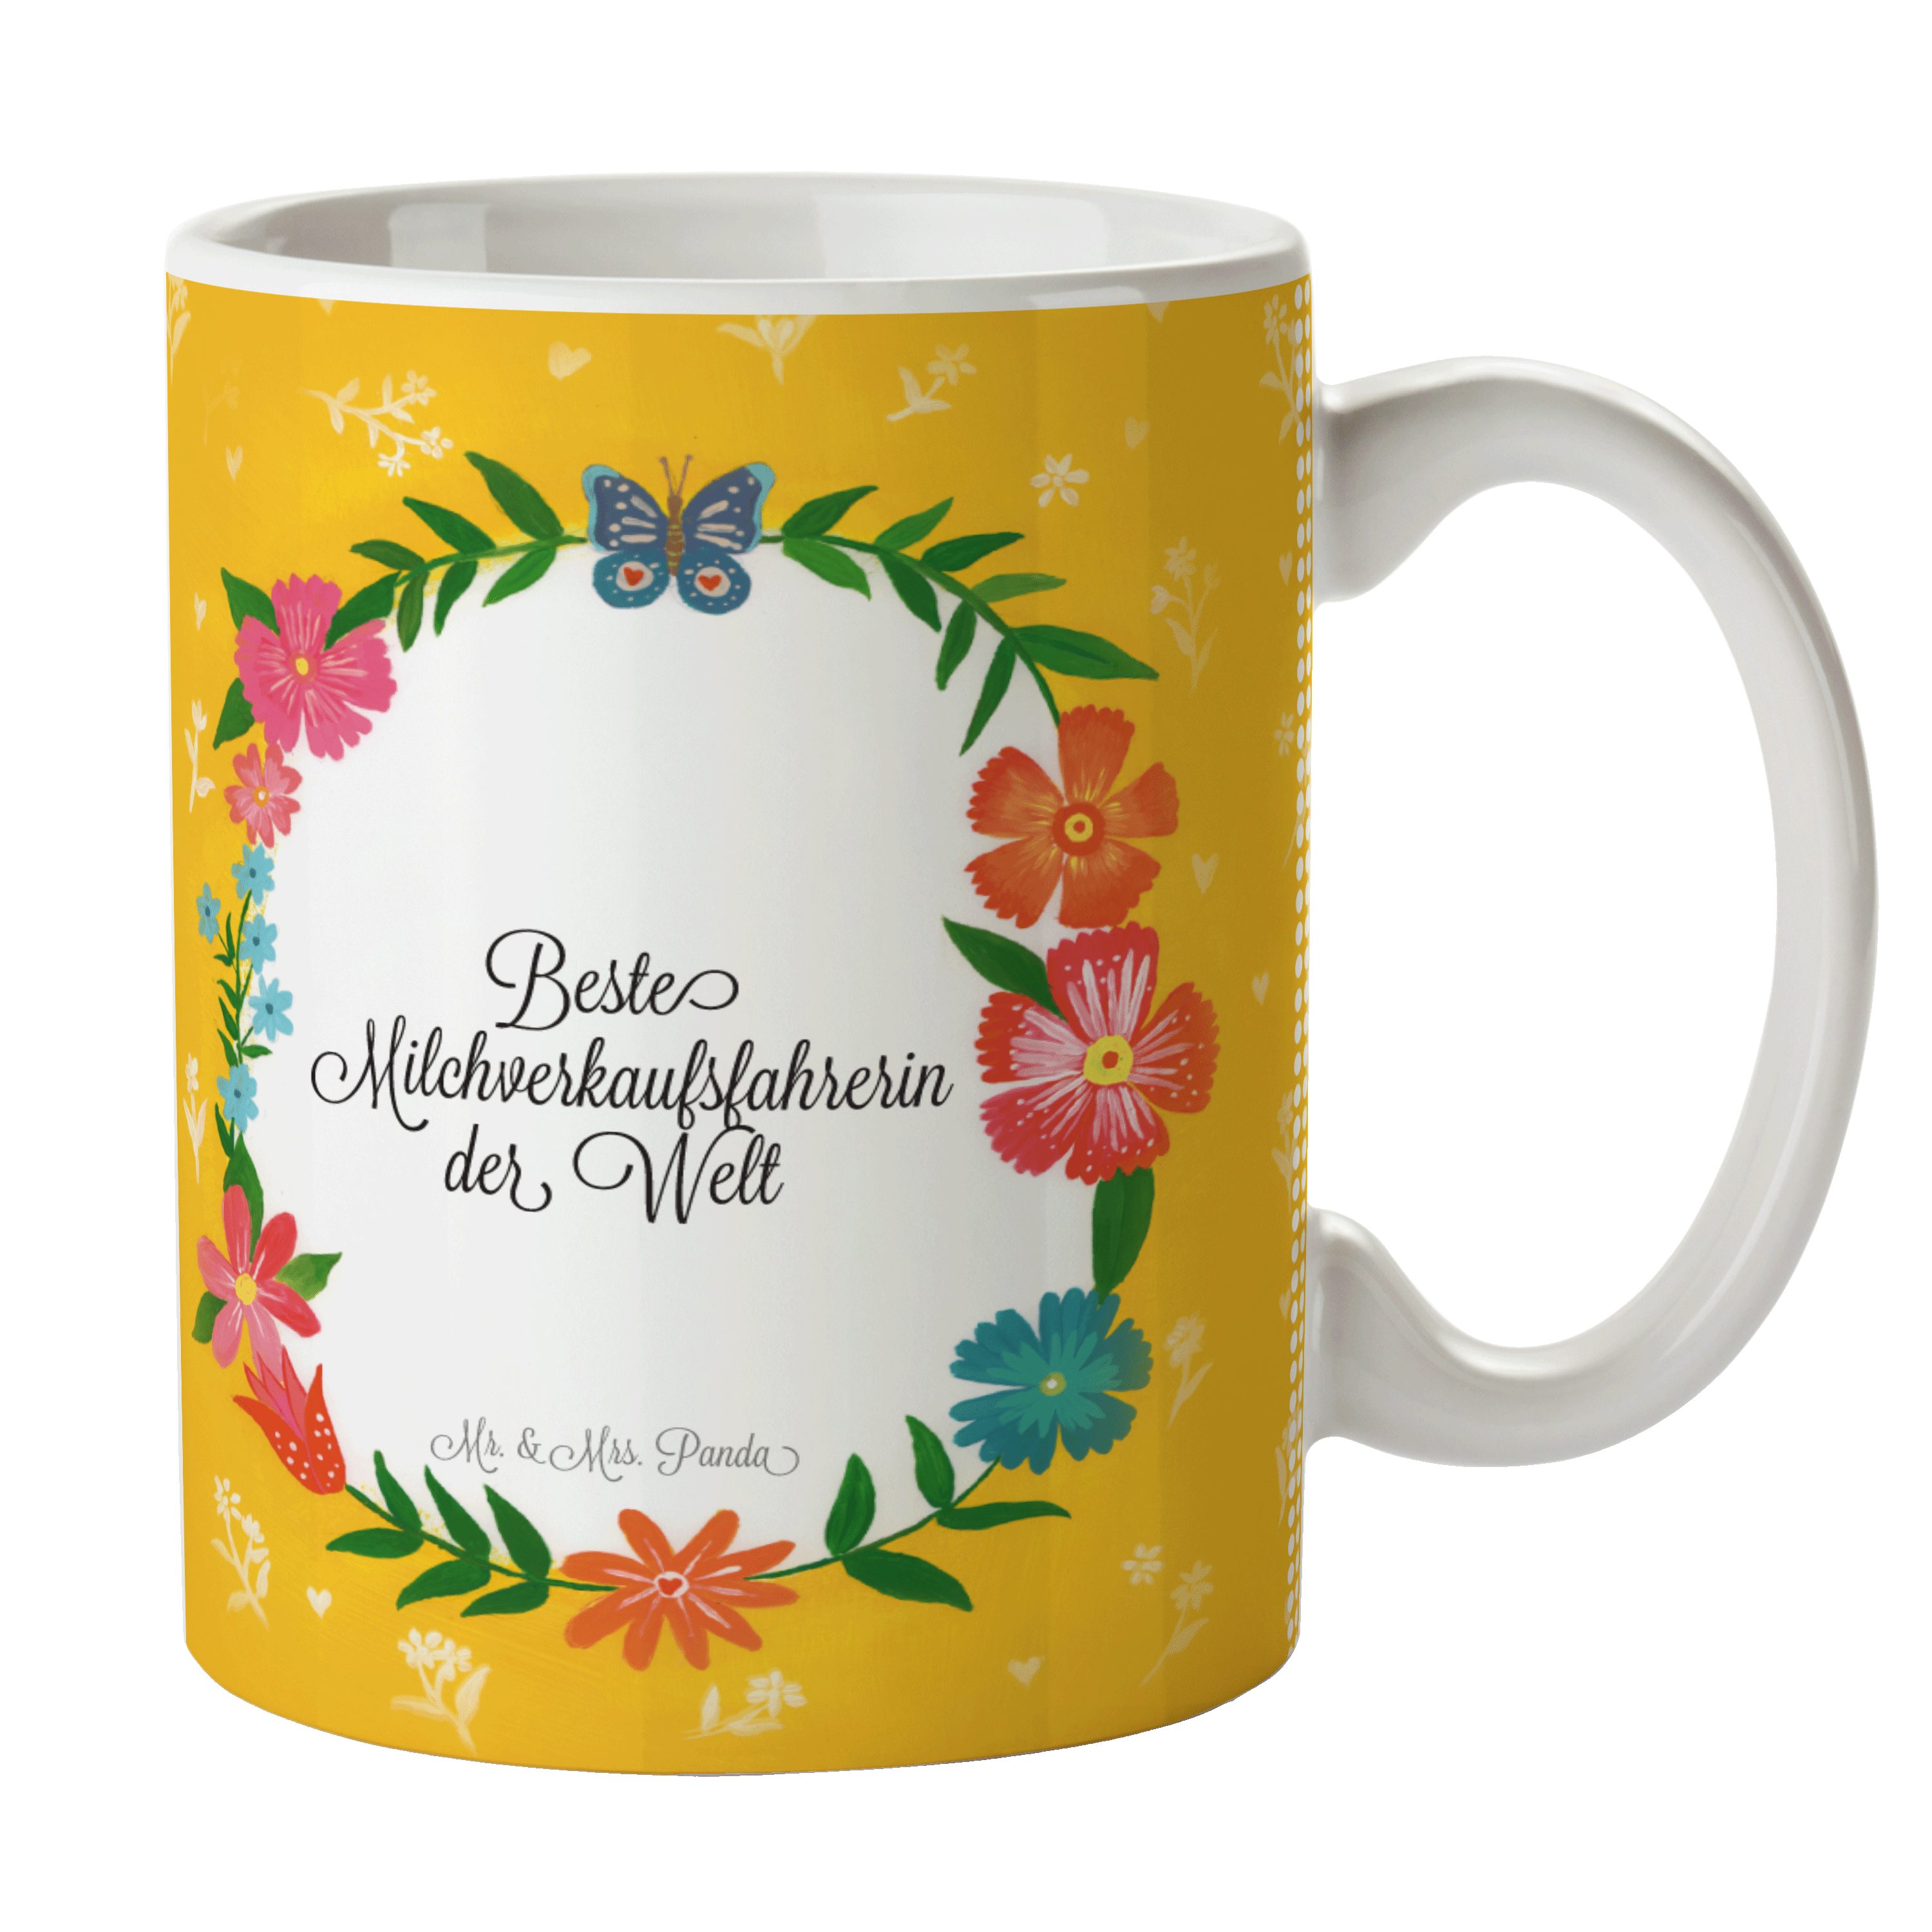 & Geschenk Tasse Keramik Tasse Mr. - Tass, Milchverkaufsfahrerin Rente, Panda Mrs. Sprüche, Geschenk,